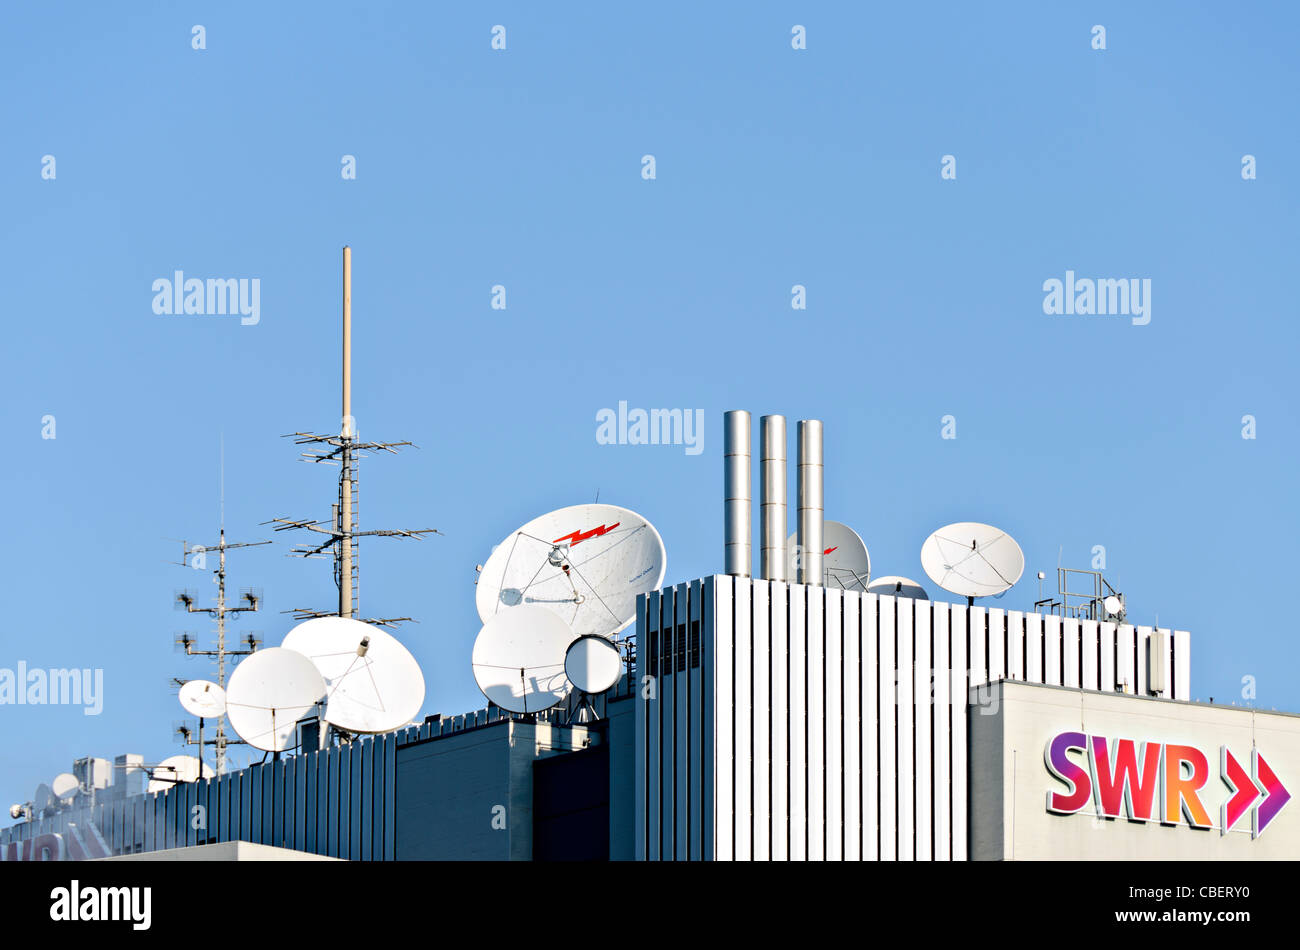 SWR Broadcasting House tour de télécommunication et paraboles contre un ciel bleu clair, Stuttgart, Allemagne Banque D'Images